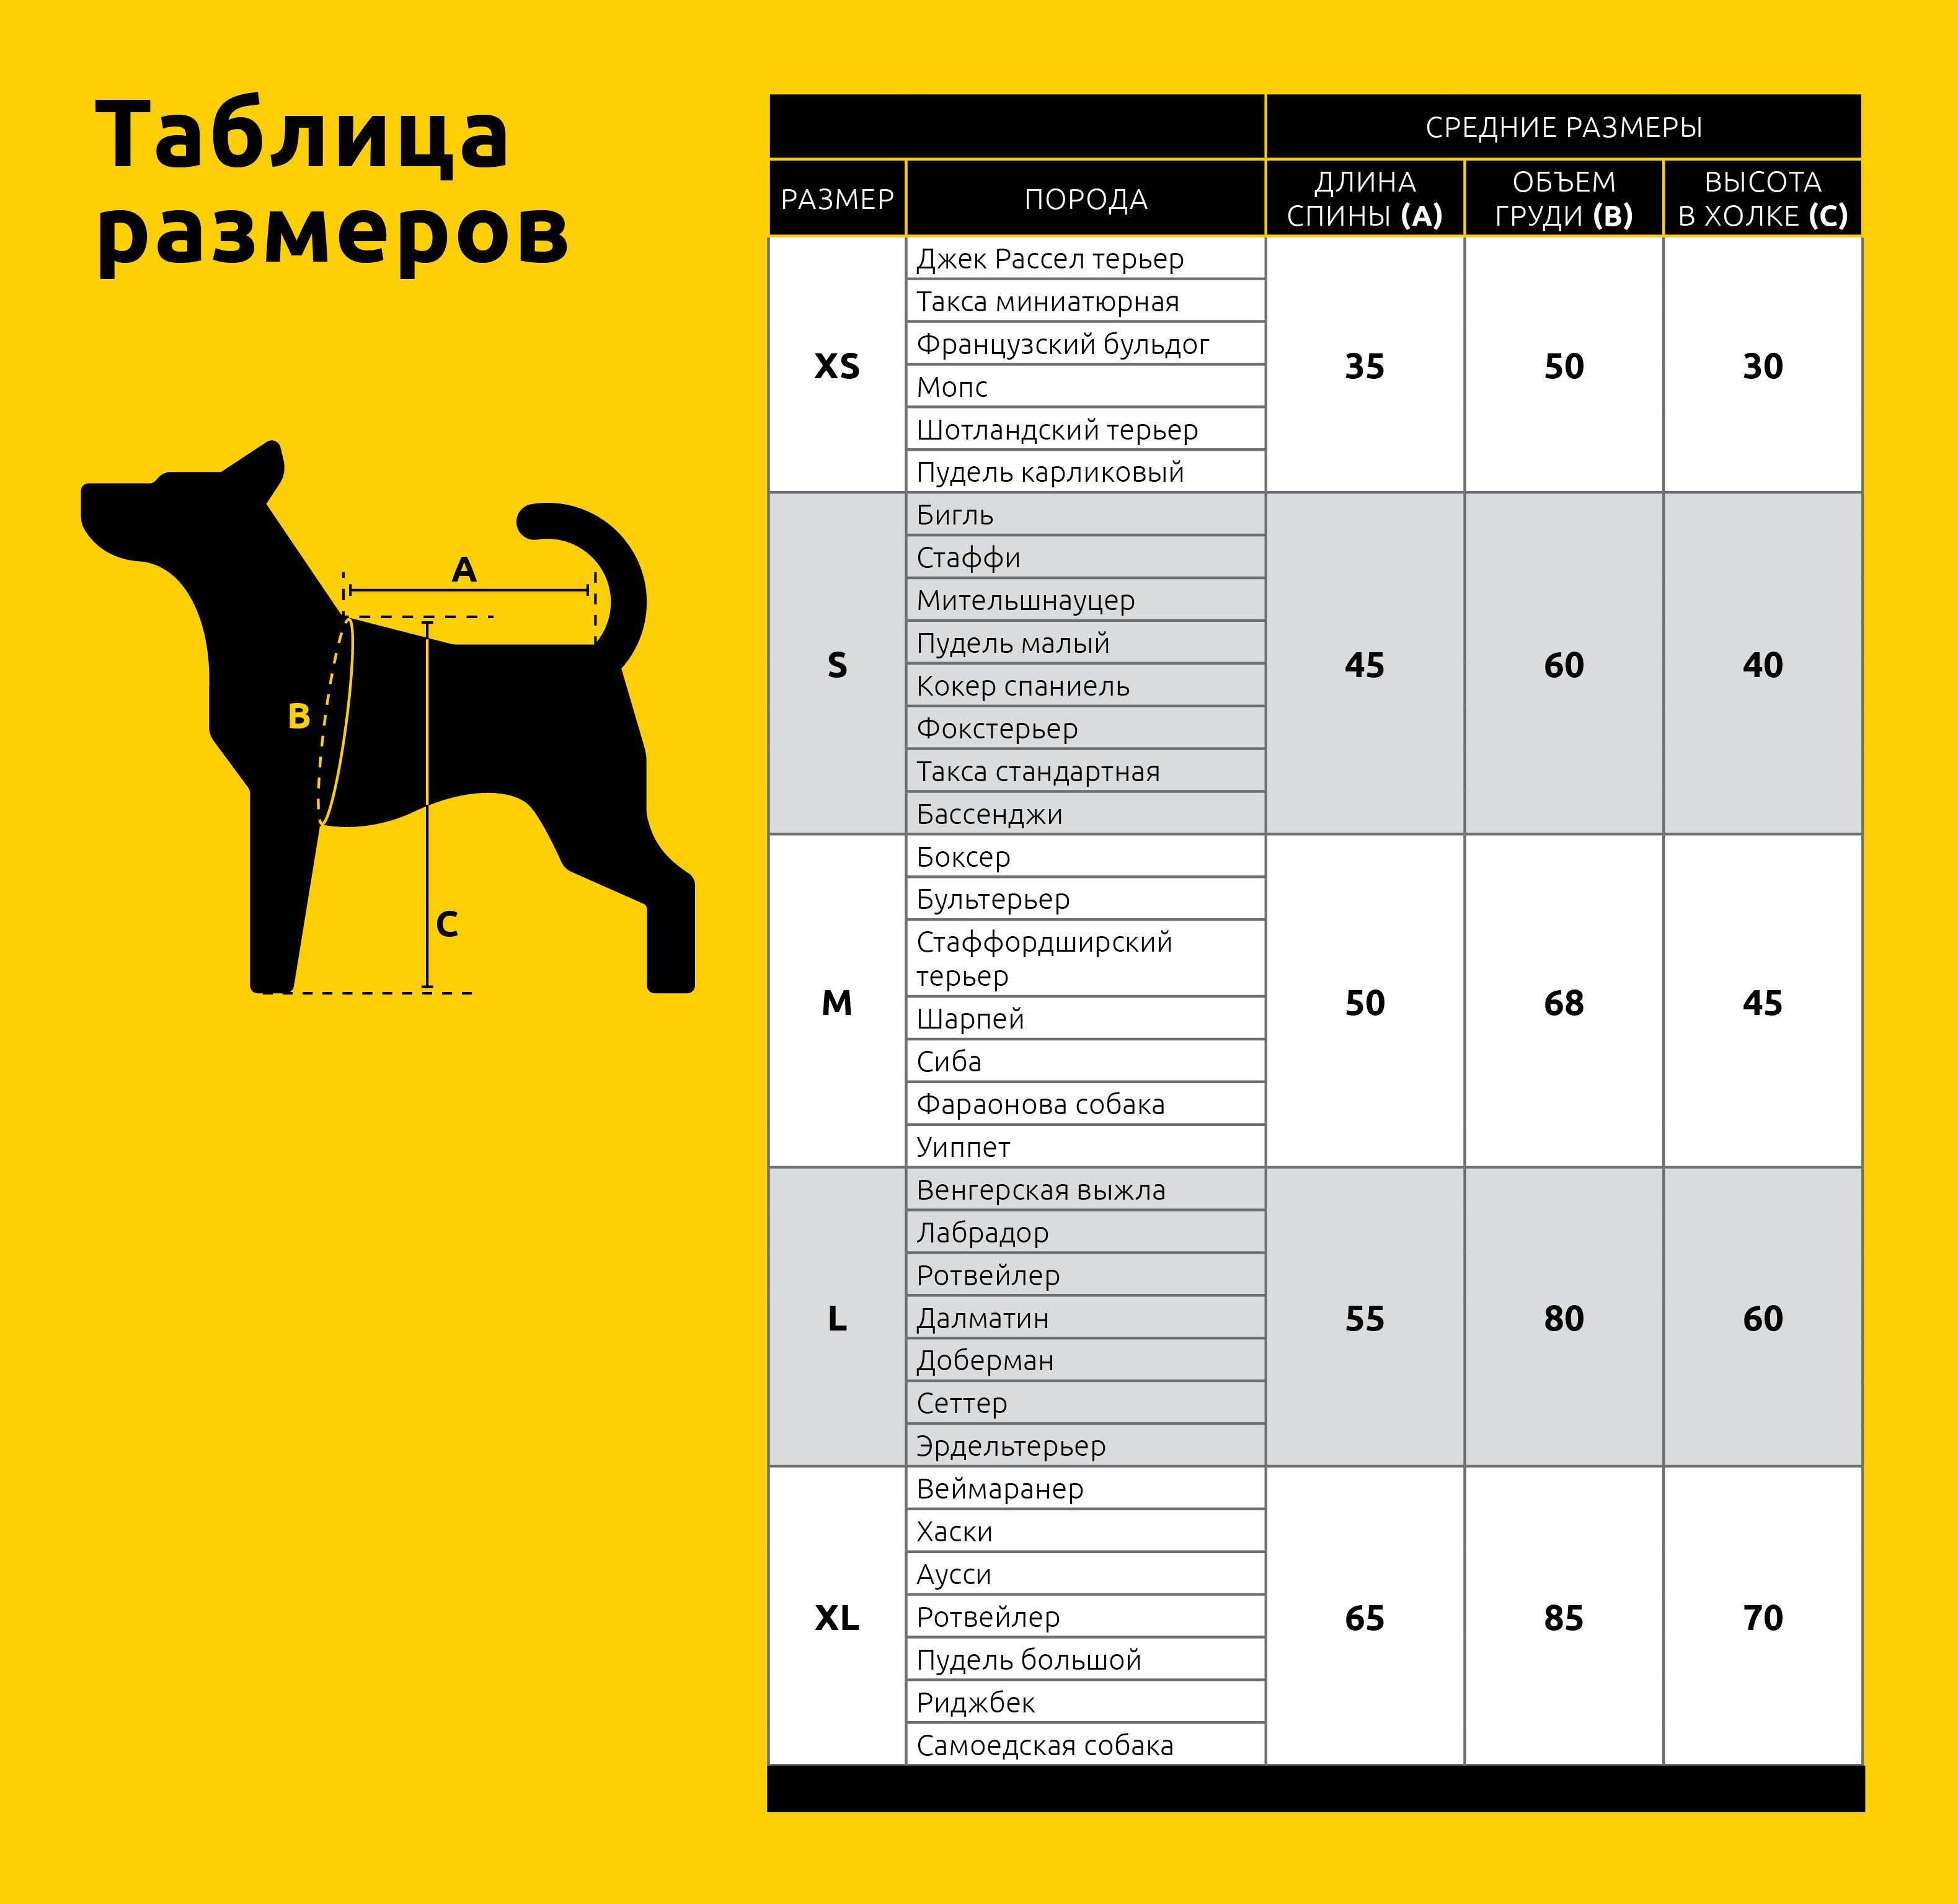 Русский той-терьер: фото, описание породы, характеристики и стандарты